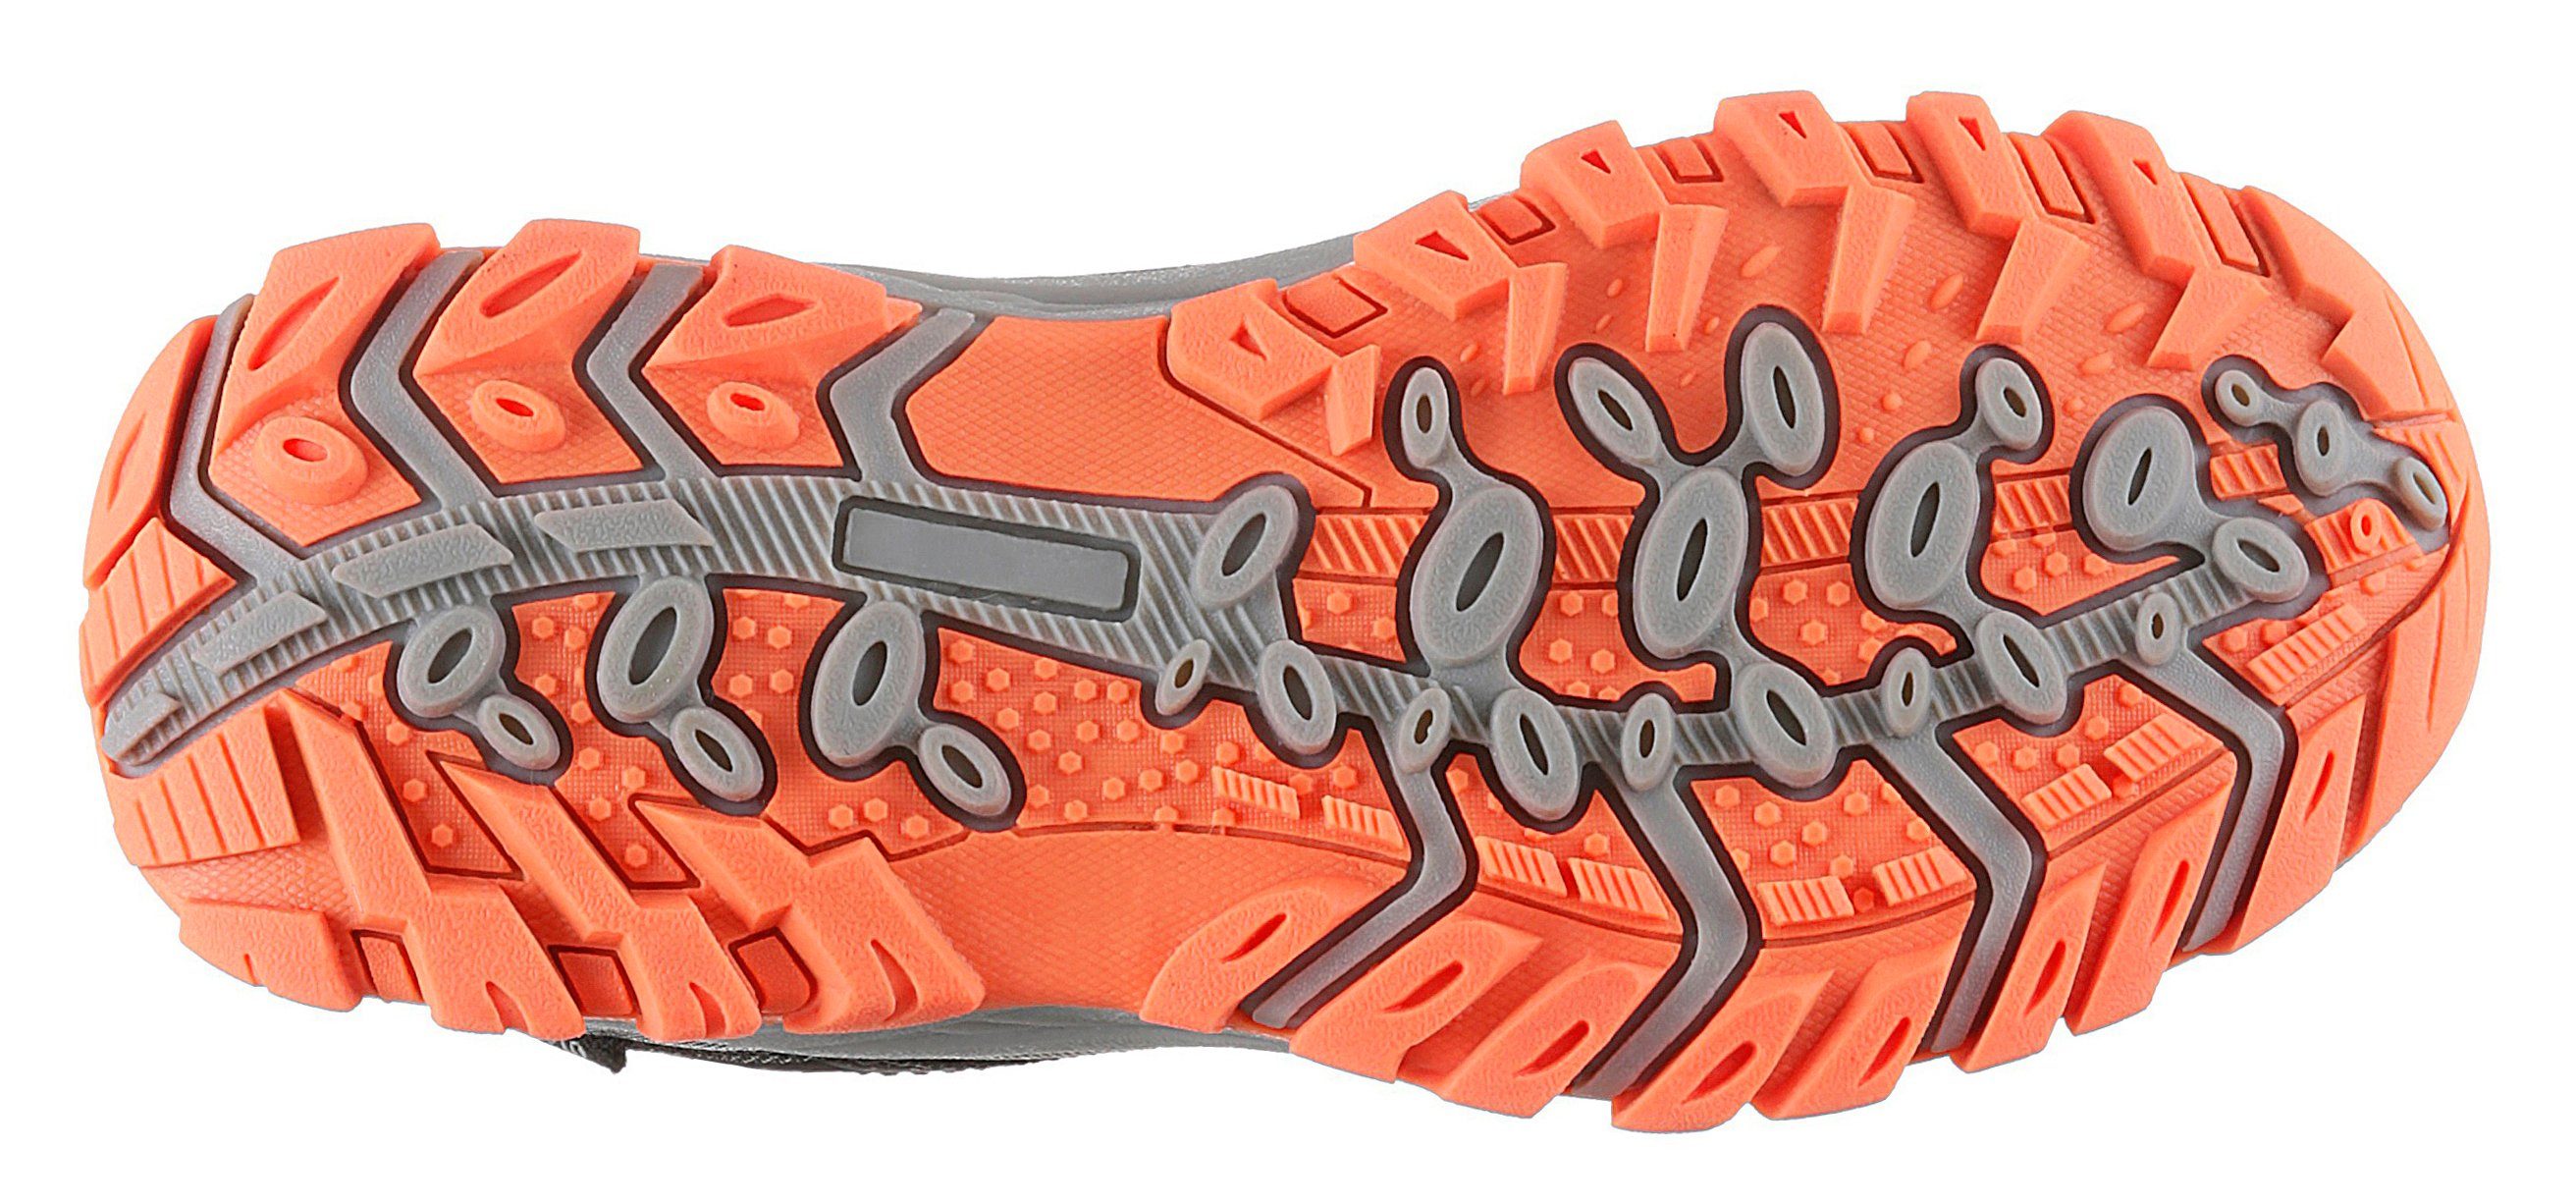 Gerli Sneaker Dockers by Slip-On mit Schnellverschluss dunkelblau-schwarz-orange